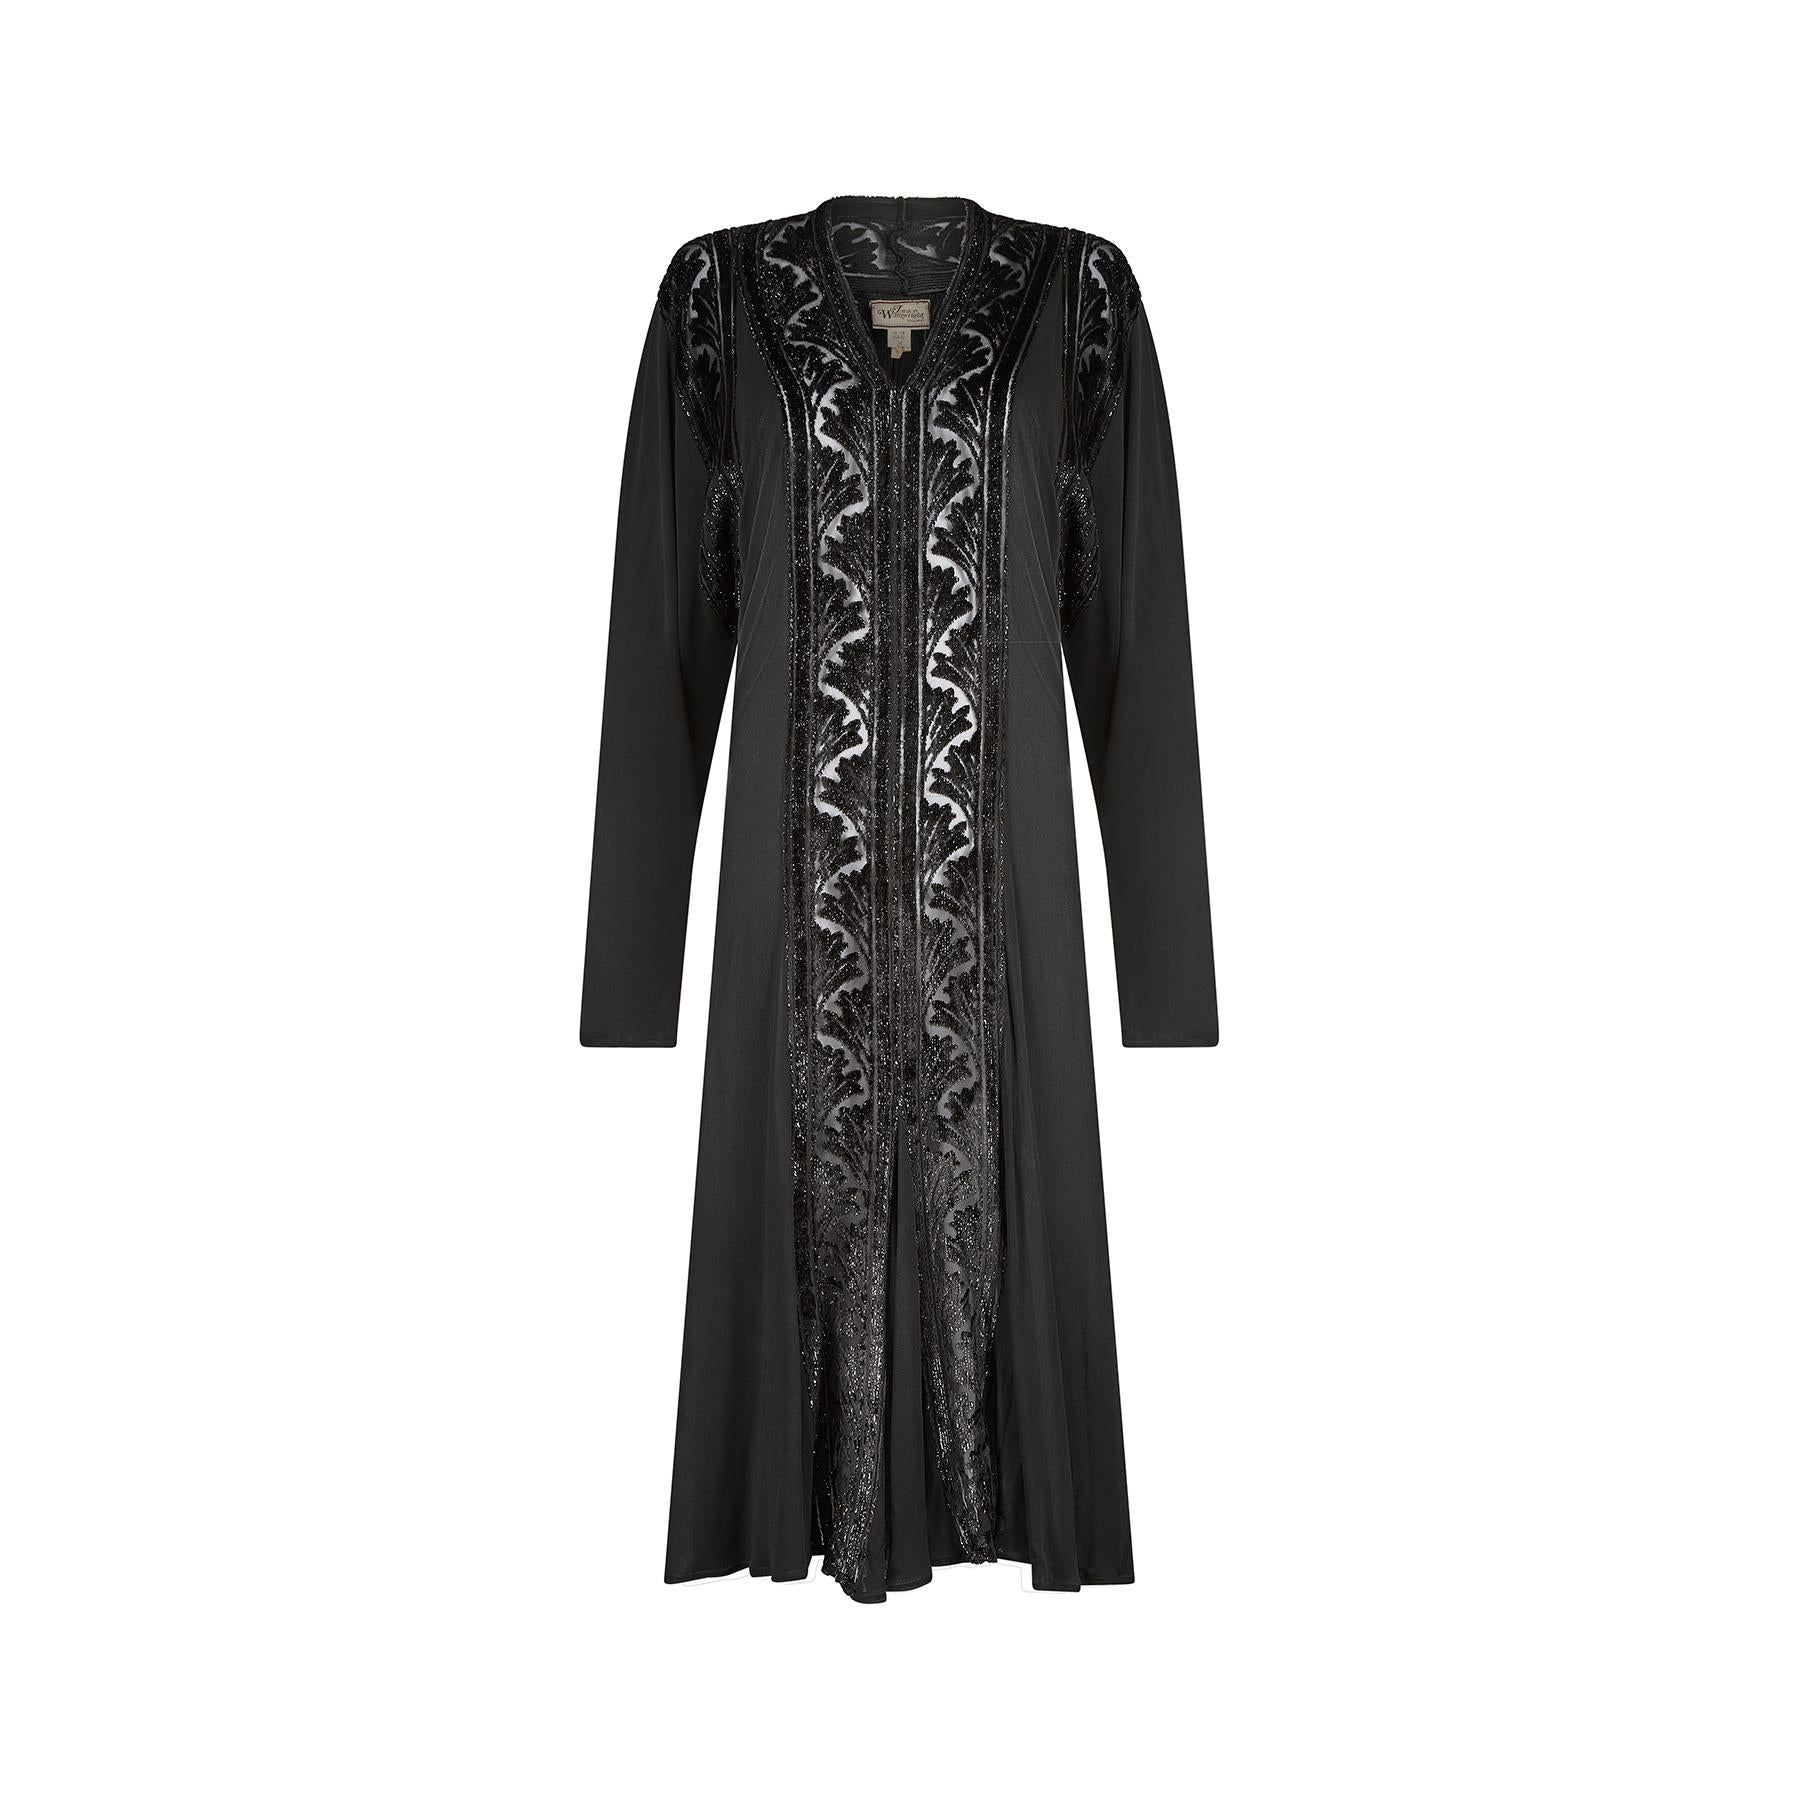 Schwarzes Abendkleid von Janice Wainwright aus den 1970er Jahren, das eine Hommage an die ursprünglichen Partykleider der 1920er Jahre ist.  Wainwrights Frühwerk ist bei Sammlern und Museen gleichermaßen begehrt.  Sie gründete 1970 ihr eigenes